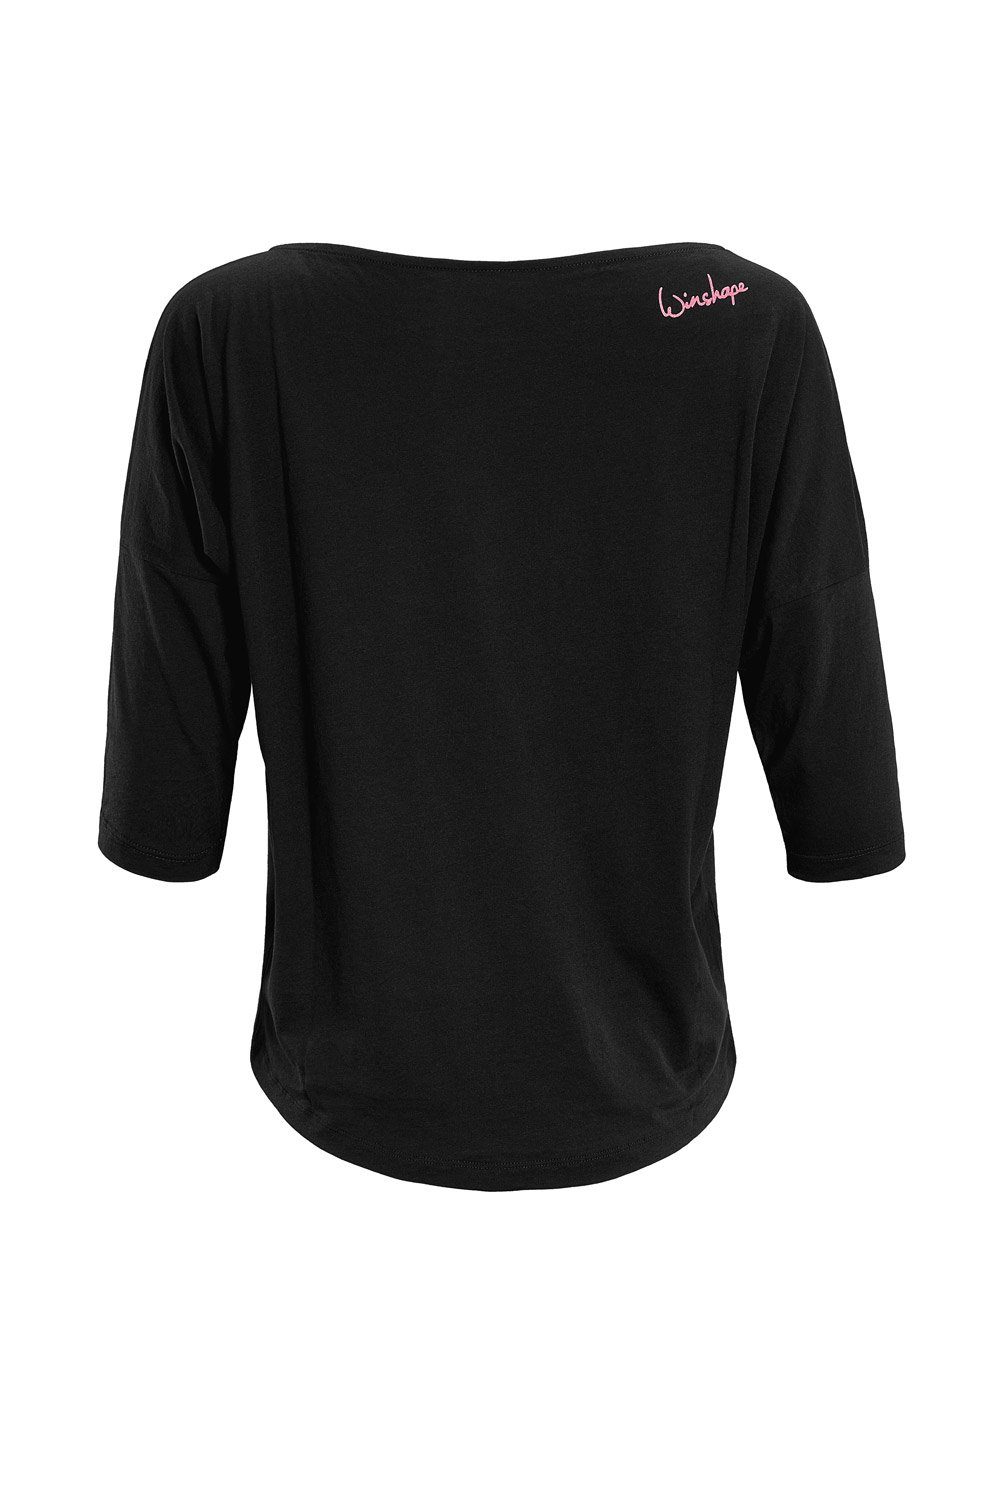 Neon Super 3/4-Arm-Shirt pinkem leicht und ultra Glitzer-Aufdruck, Freizeit Winshape MCS001 geeignet mit Sport für